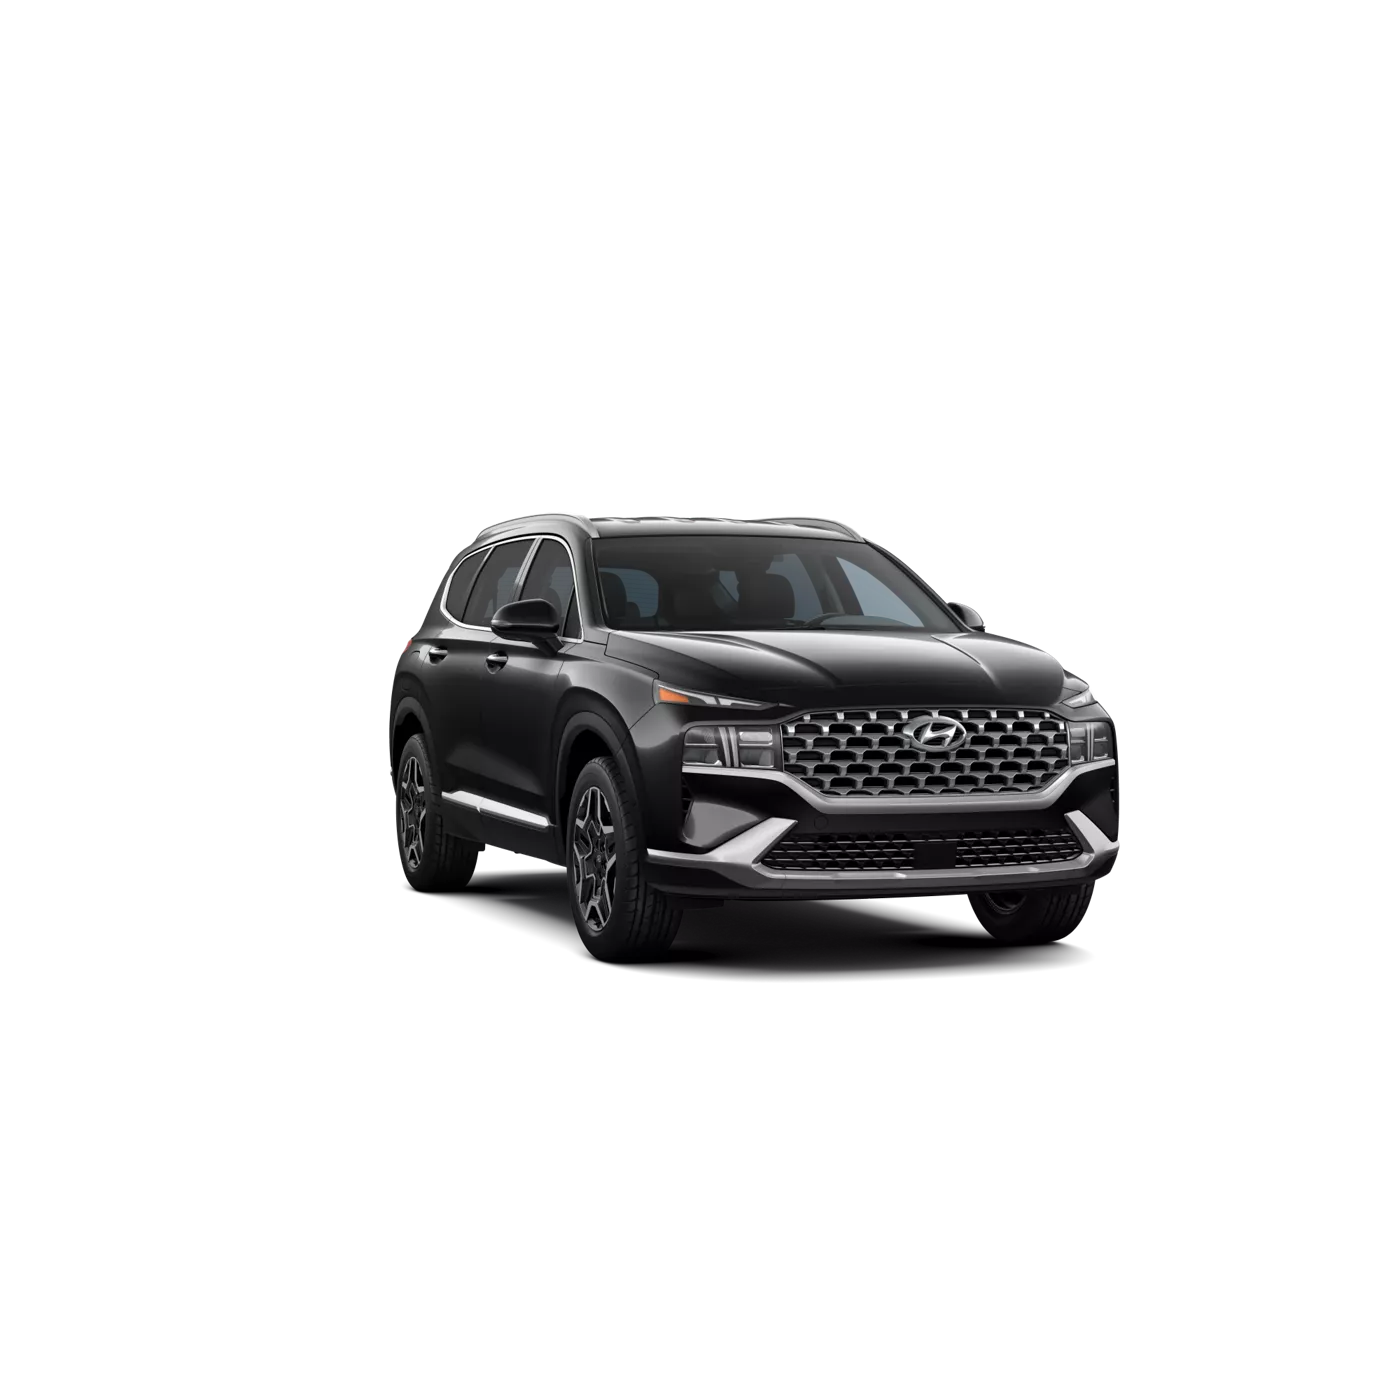 New Hyundai Santa Fe For Sale In Boise ID Bronco Motors Hyundai